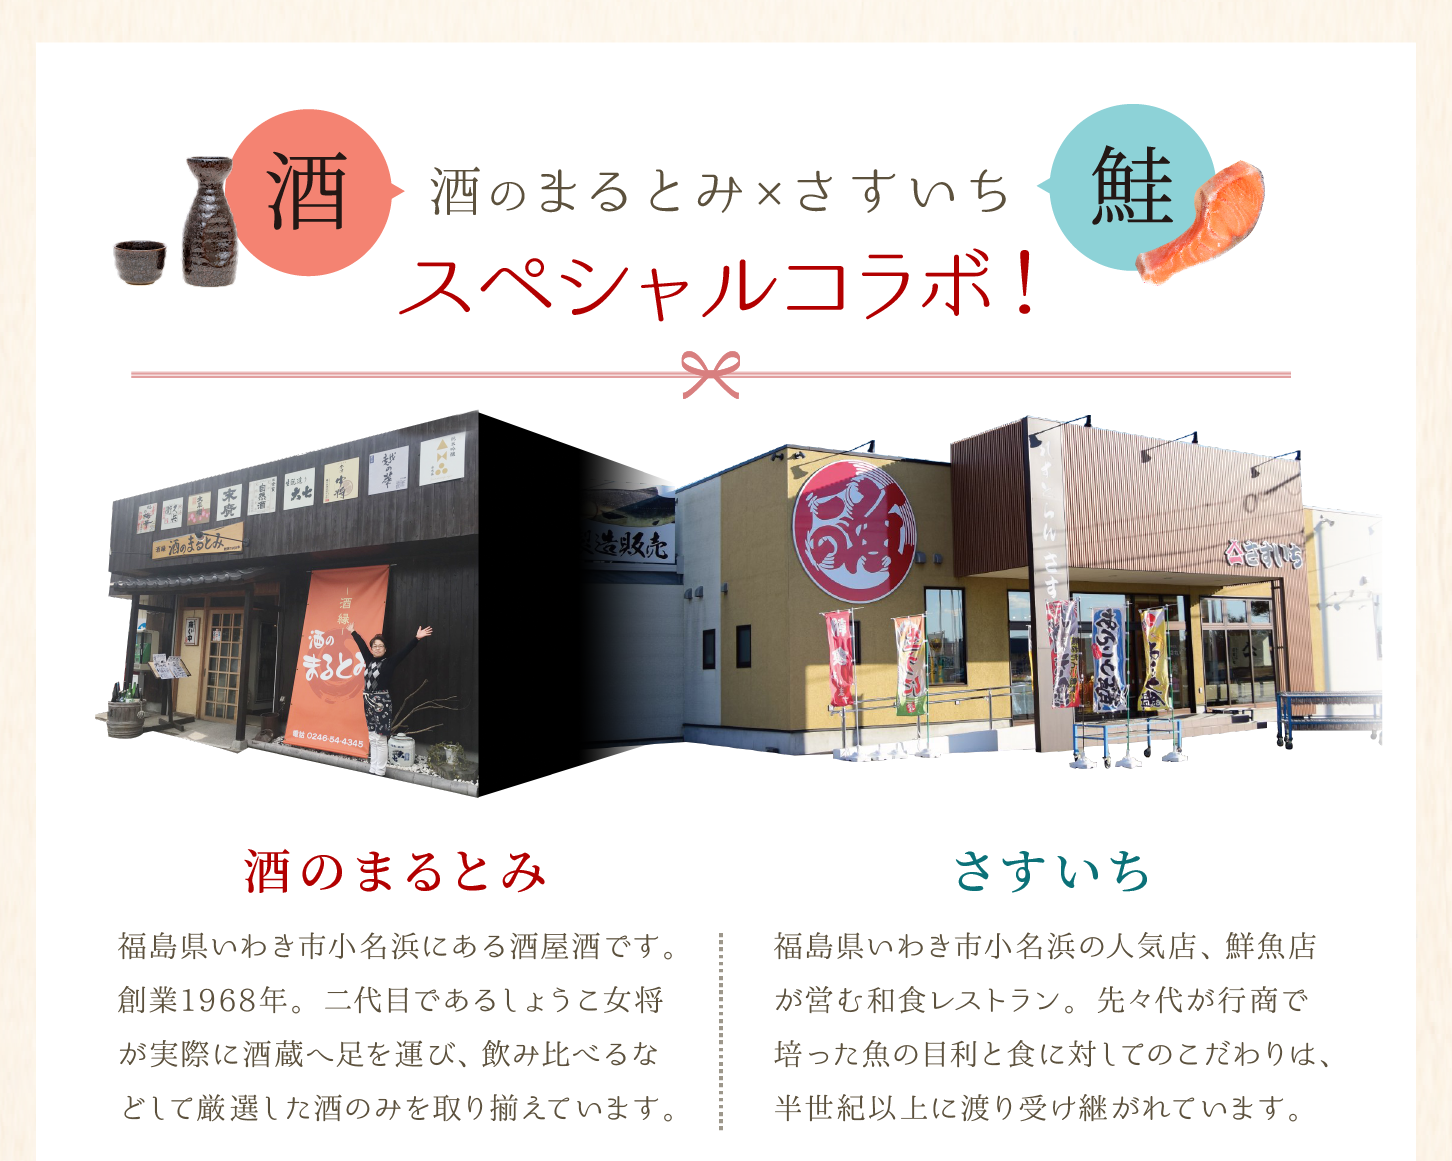 福島県いわき市小名浜にある酒屋酒である酒のまるとみと、鮮魚店が営む和食レストラン、さすいちのスペシャルコラボレーション企画です。